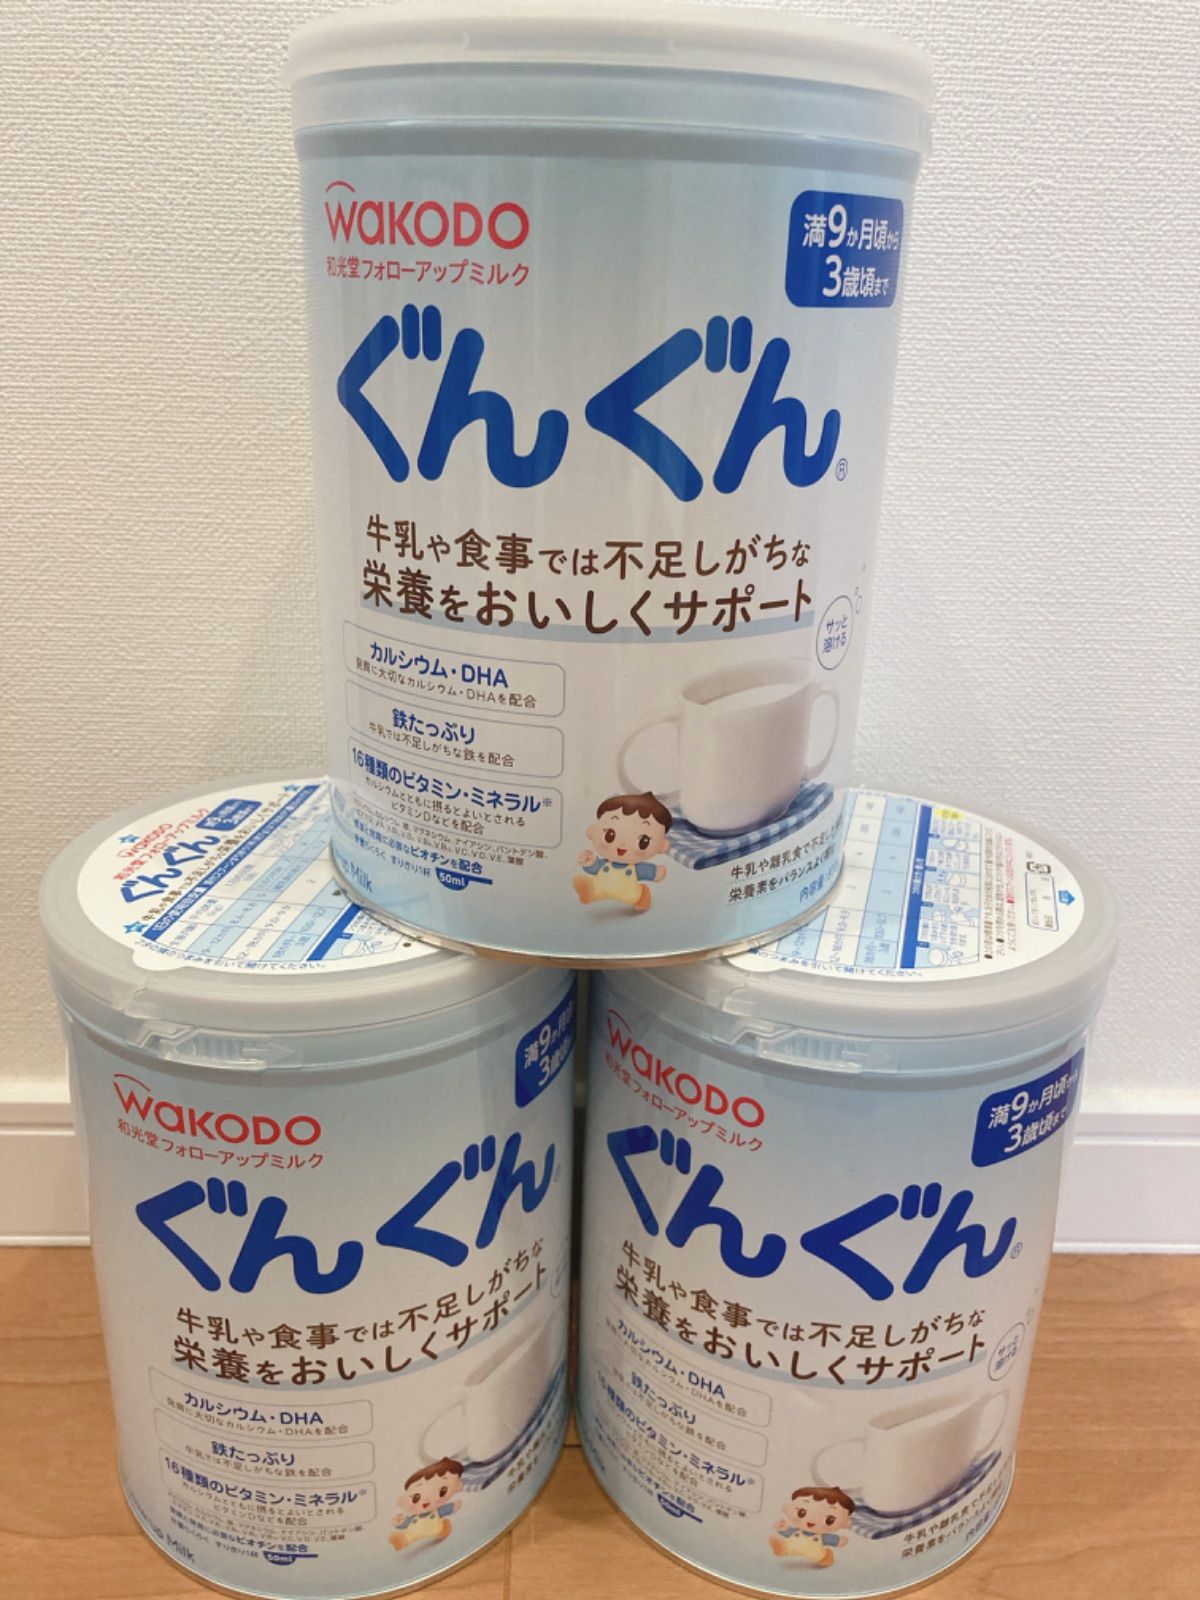 4缶期限は2025年1月フォローアップミルク(ぐんぐん) 7缶+おまけ - ミルク